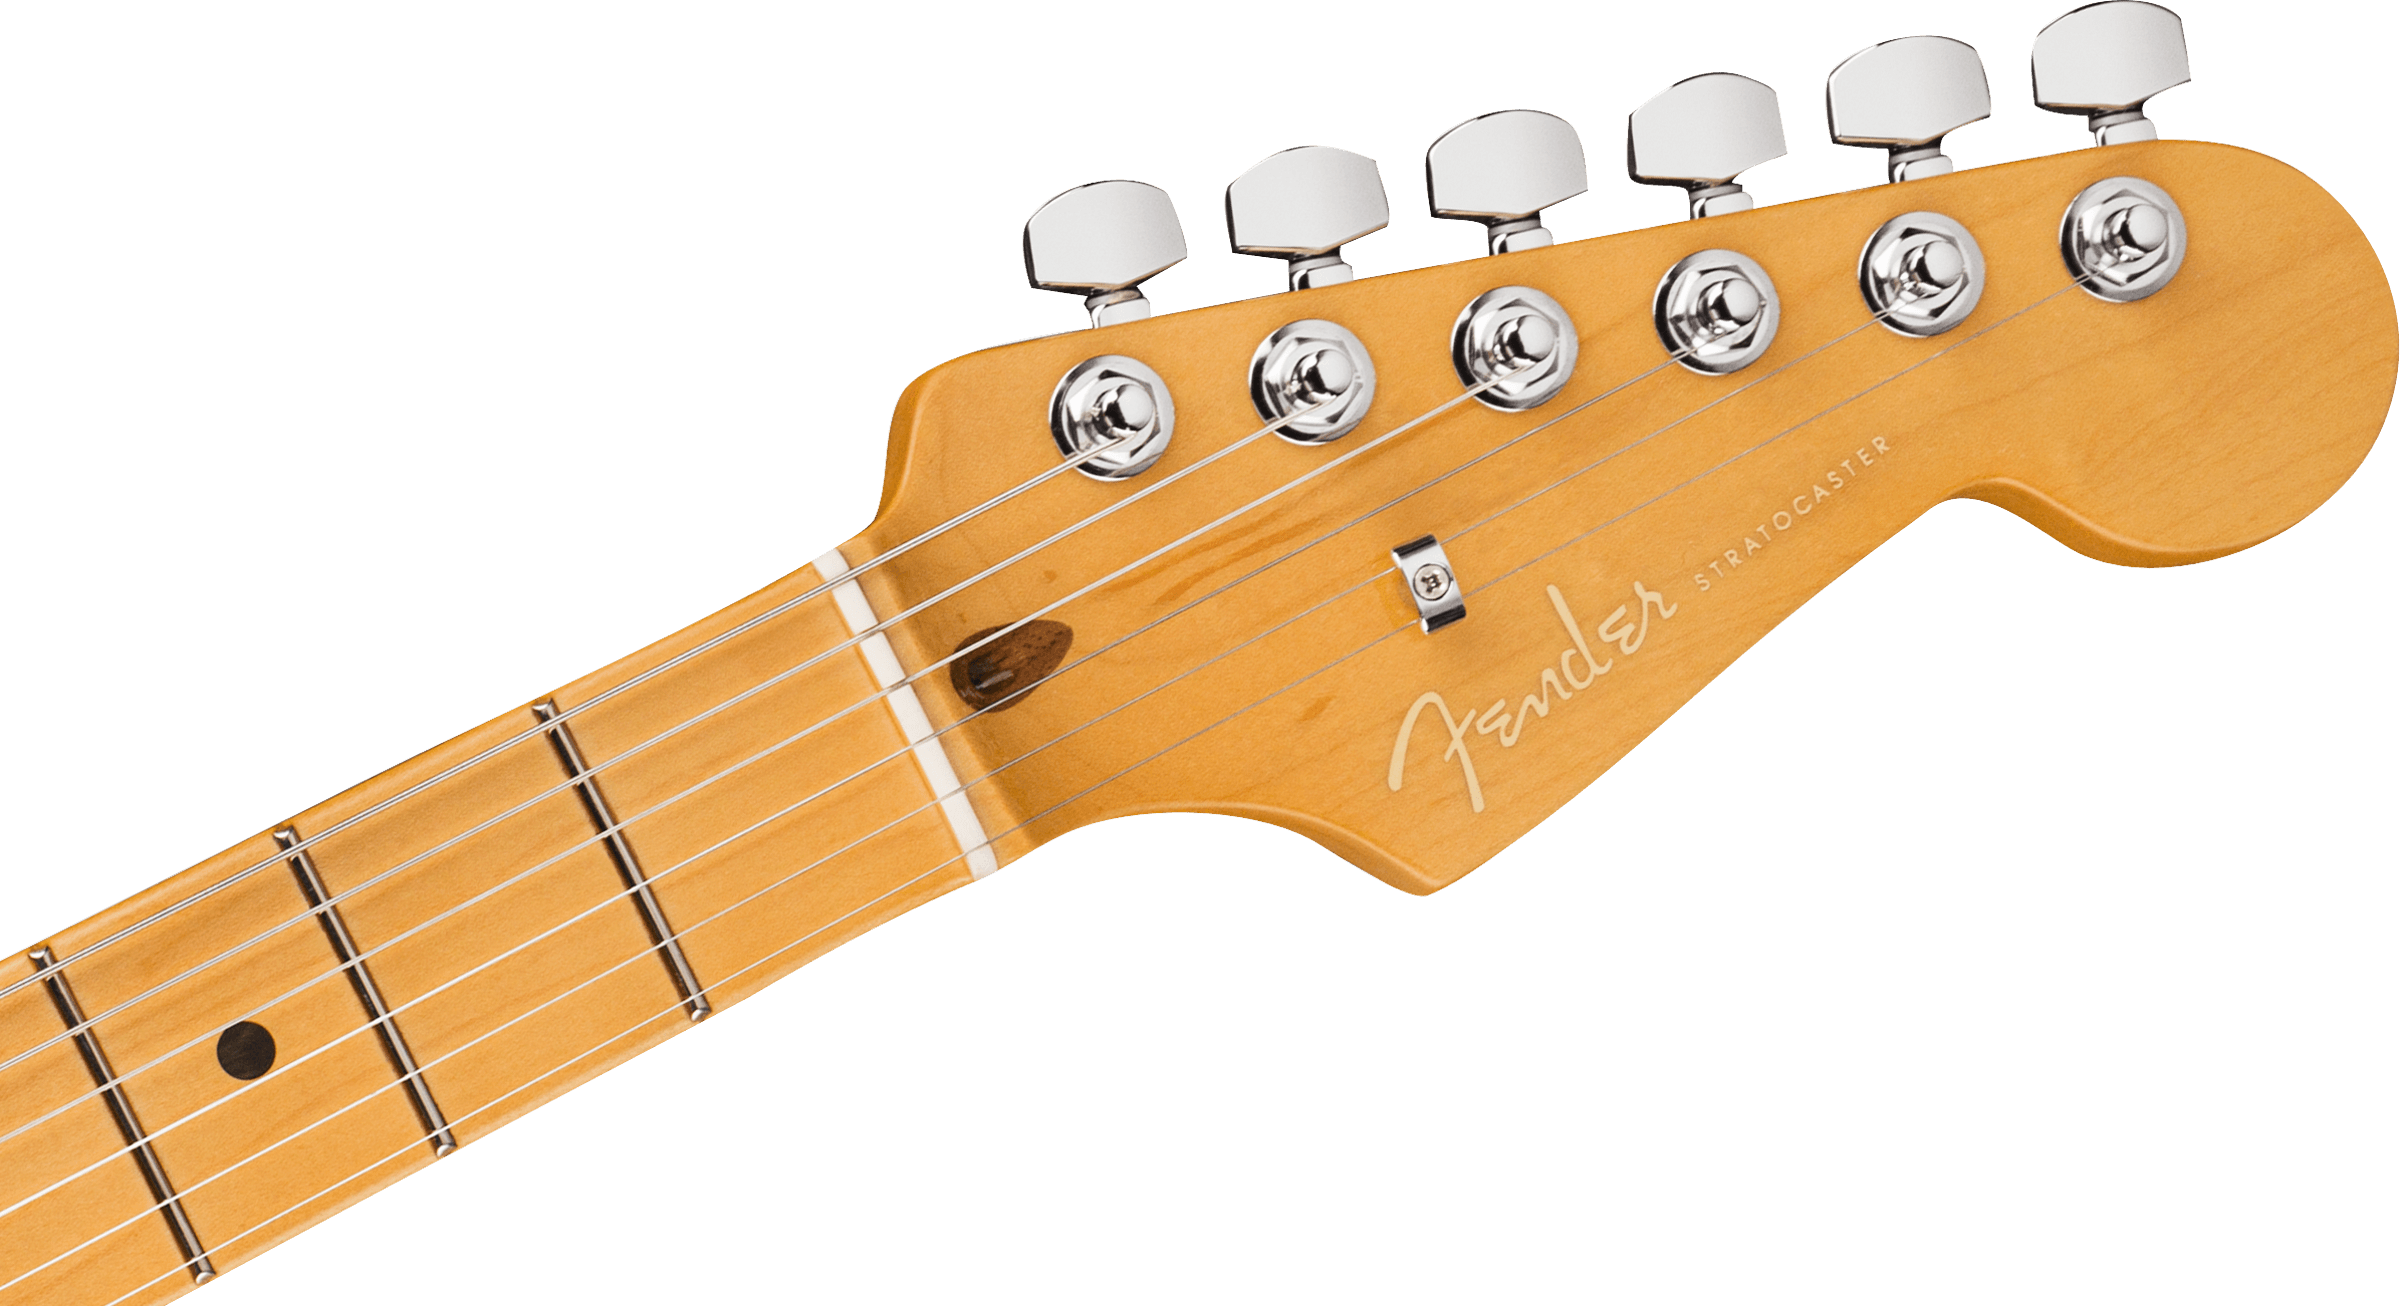 Fender American Ultra Stratocaster® HSS, Maple Fingerboard, Ultraburst